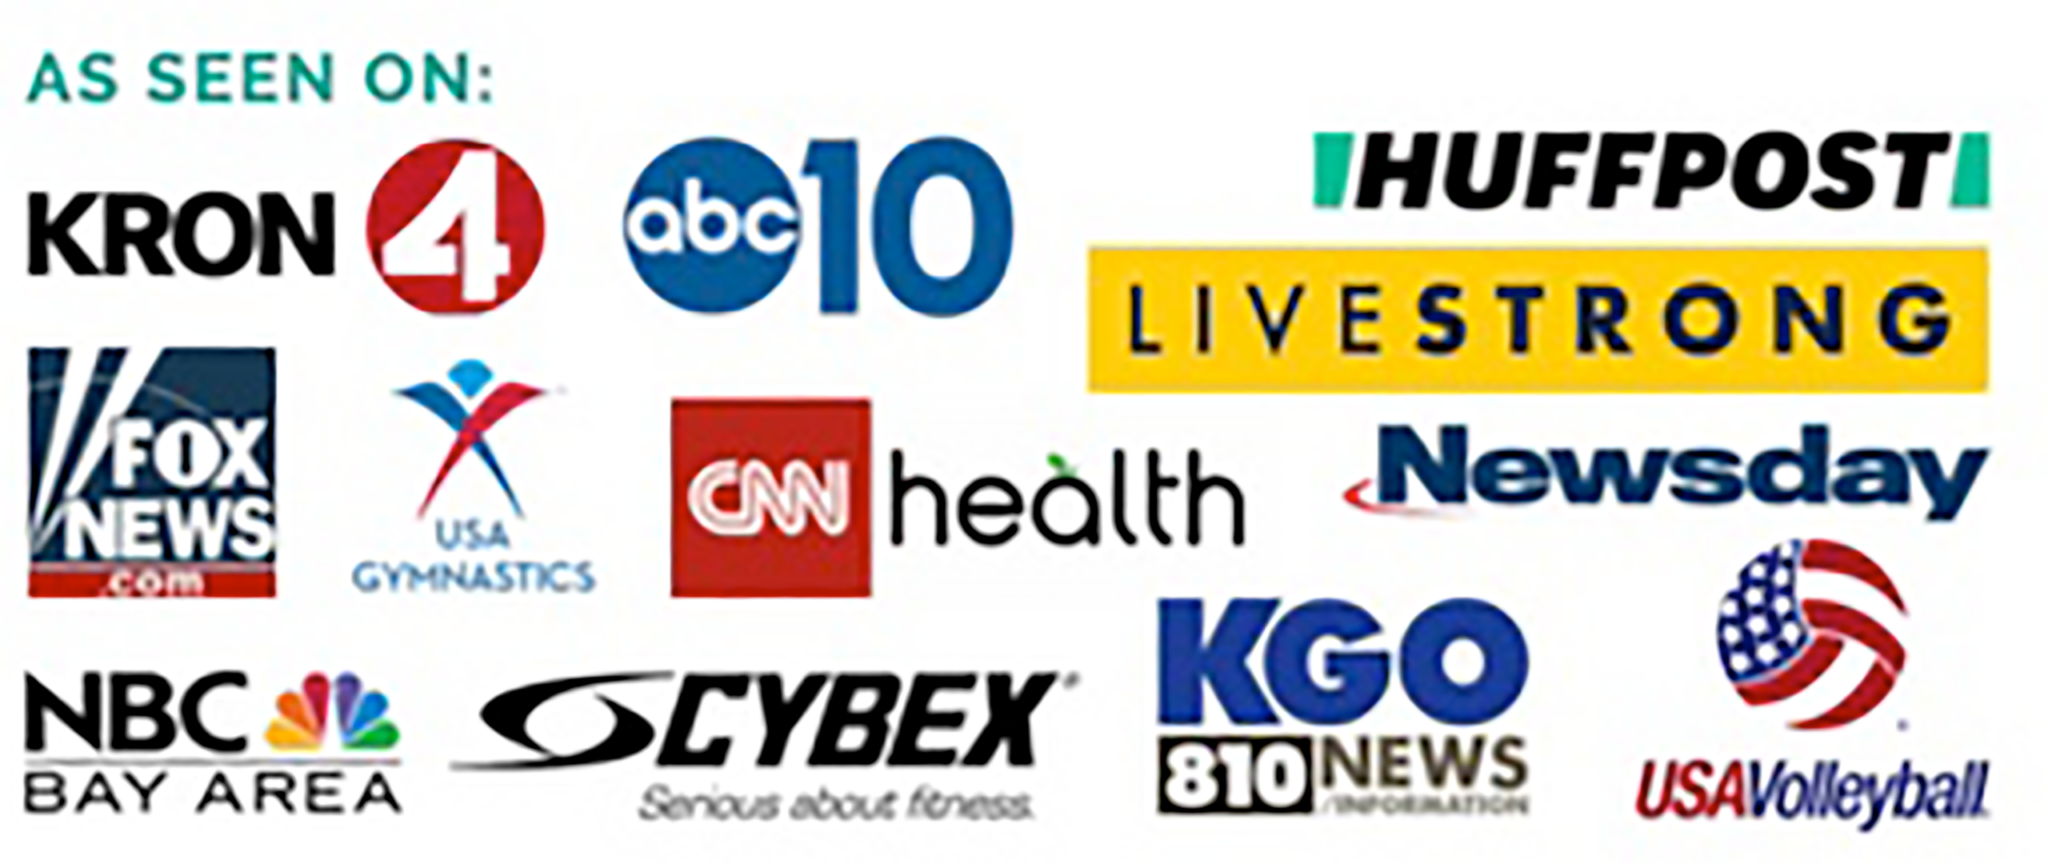 Karen Owoc's media appearances include KRON 4 News, Fox News, NBC Bay Area News, ABC 10, KGO 810 News, CNN Health, HuffPost